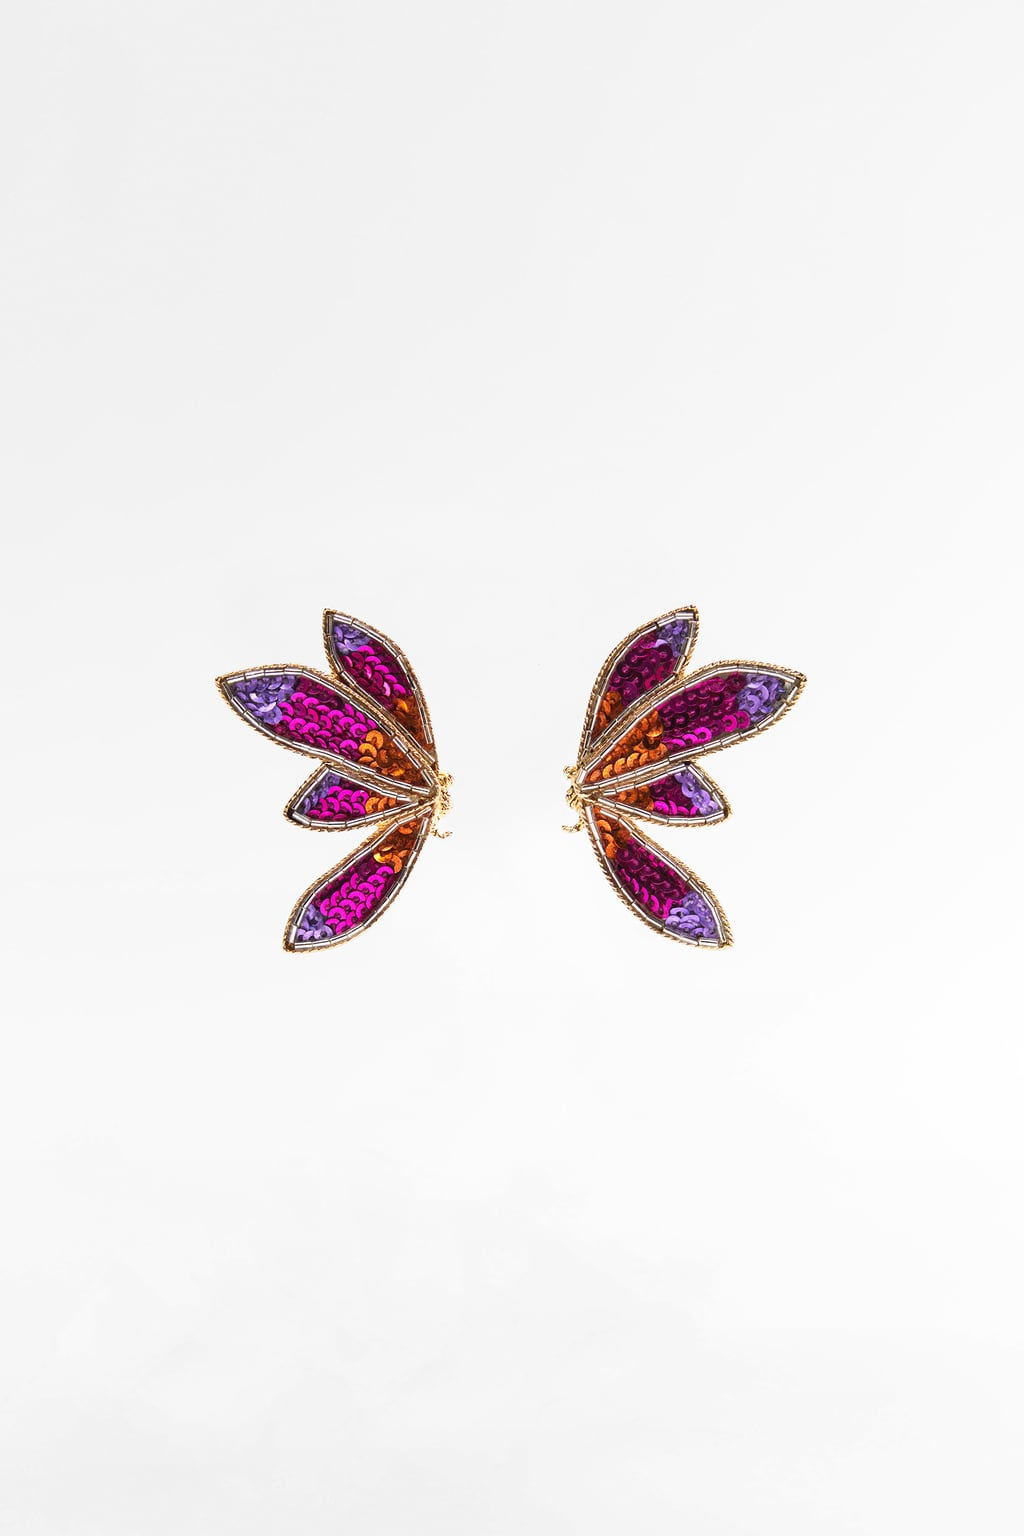 com 16.ZARA Sequined Butterfly Earrings €12.95, 